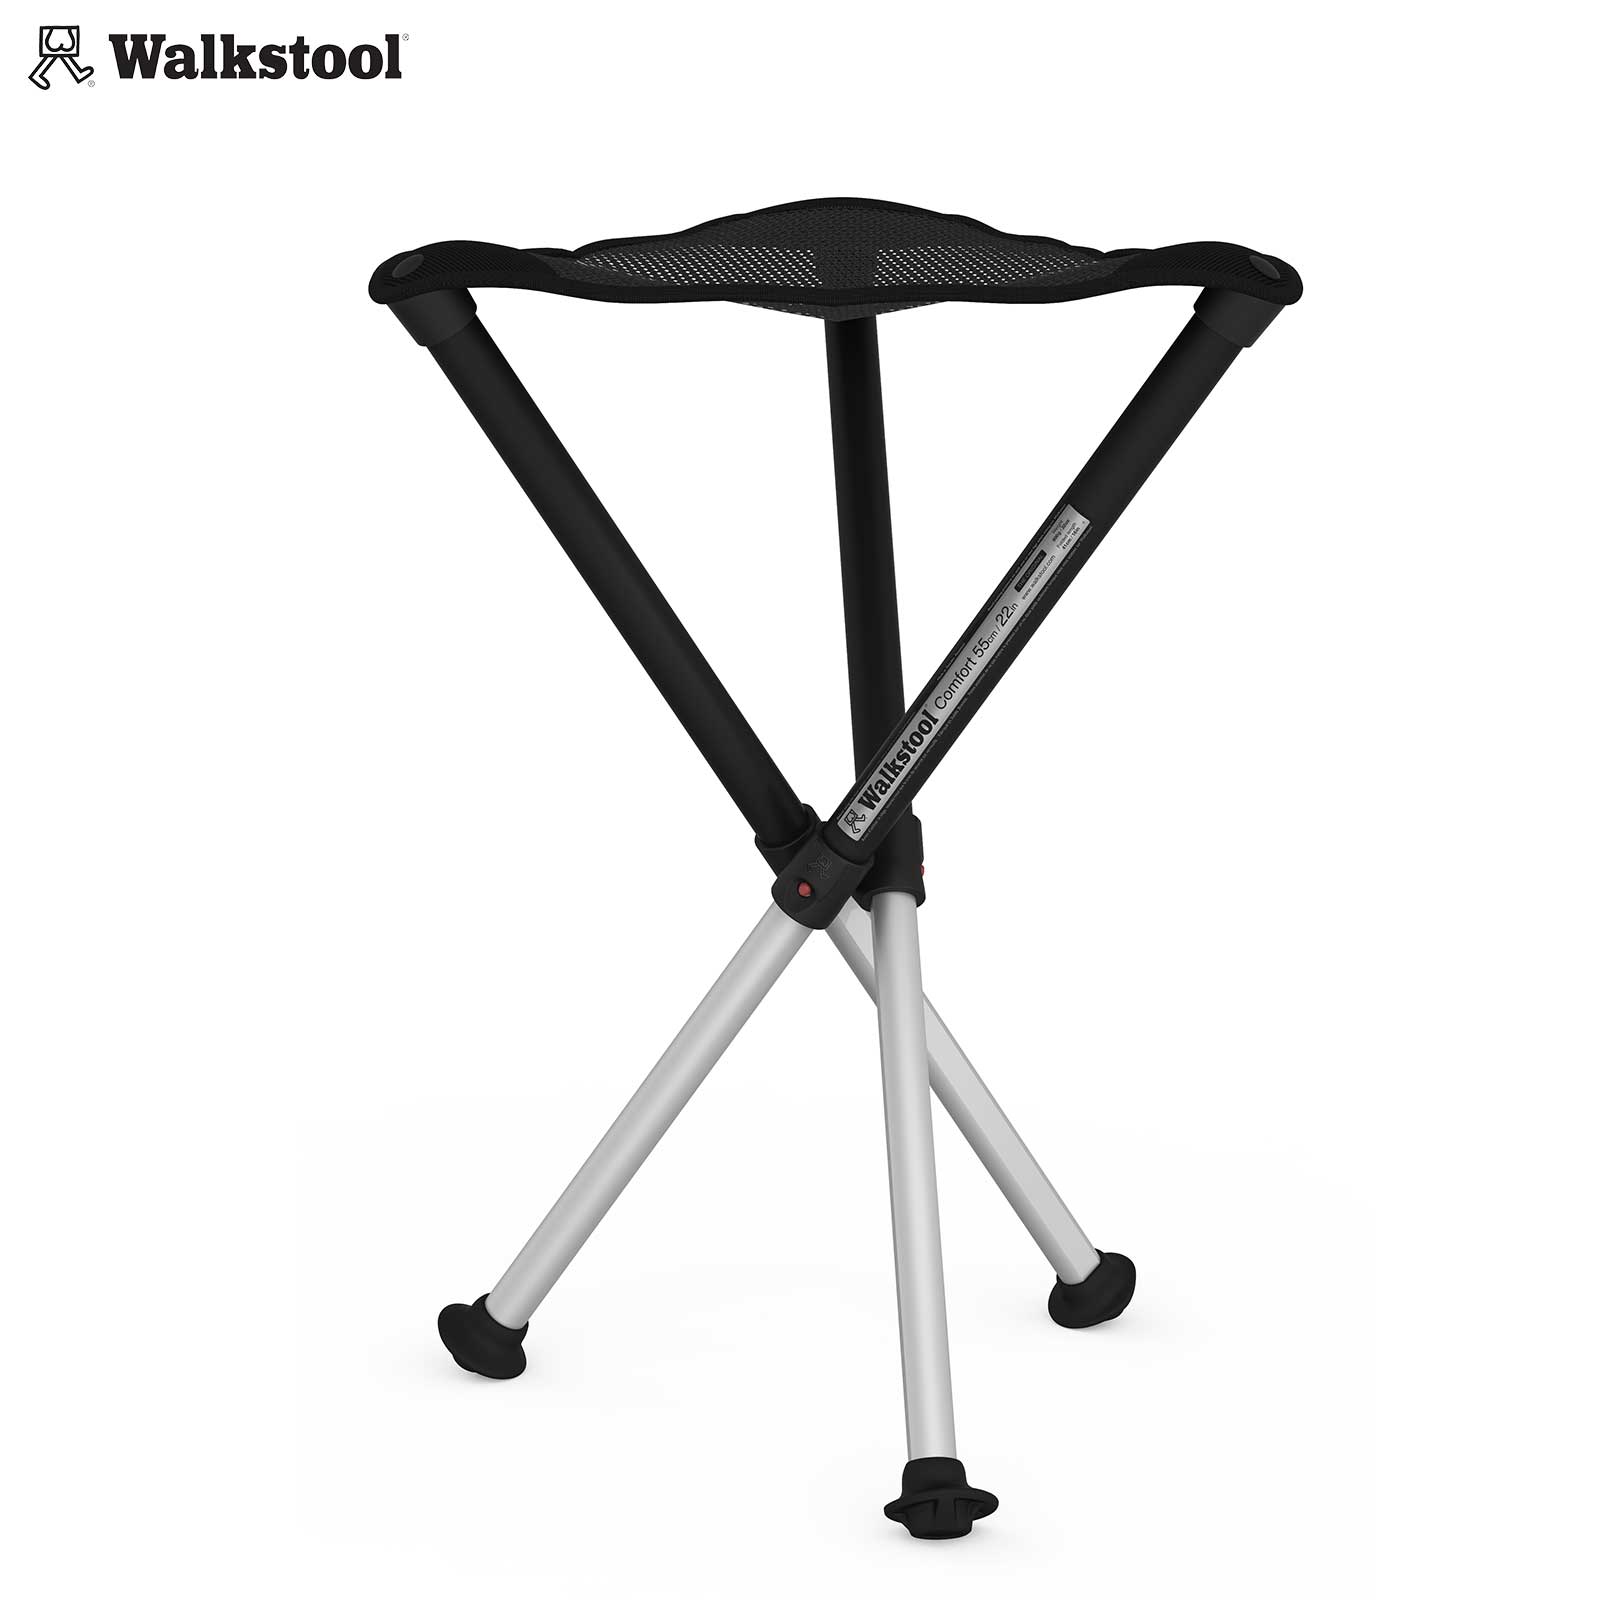 Dreibeinsitz "Comfort Walkstool" von Walkstool